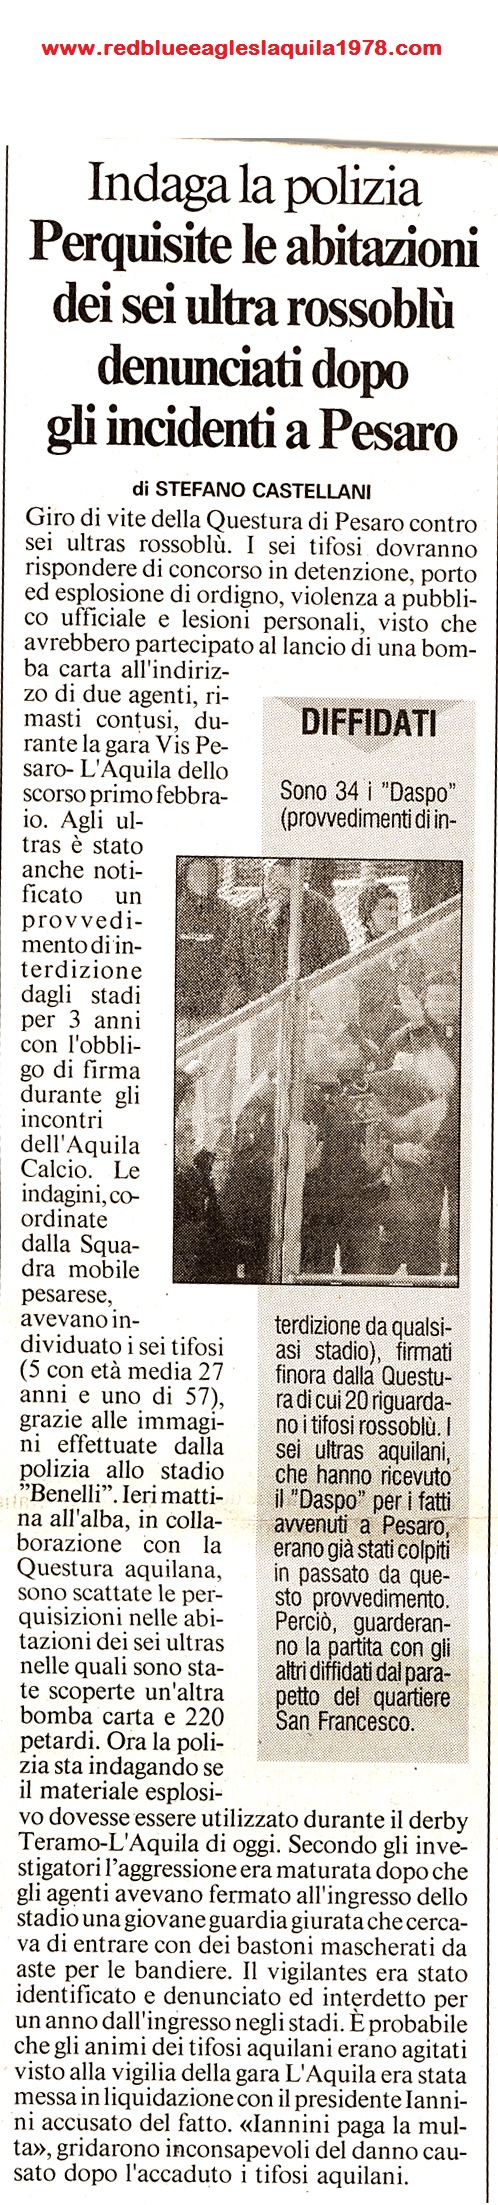 Disordini nel settore ospite con lancio di bombe carta e ferimento di due poliziotti in Vis Pesaro- L'Aquila 10-2-2004 serie C1 (2)